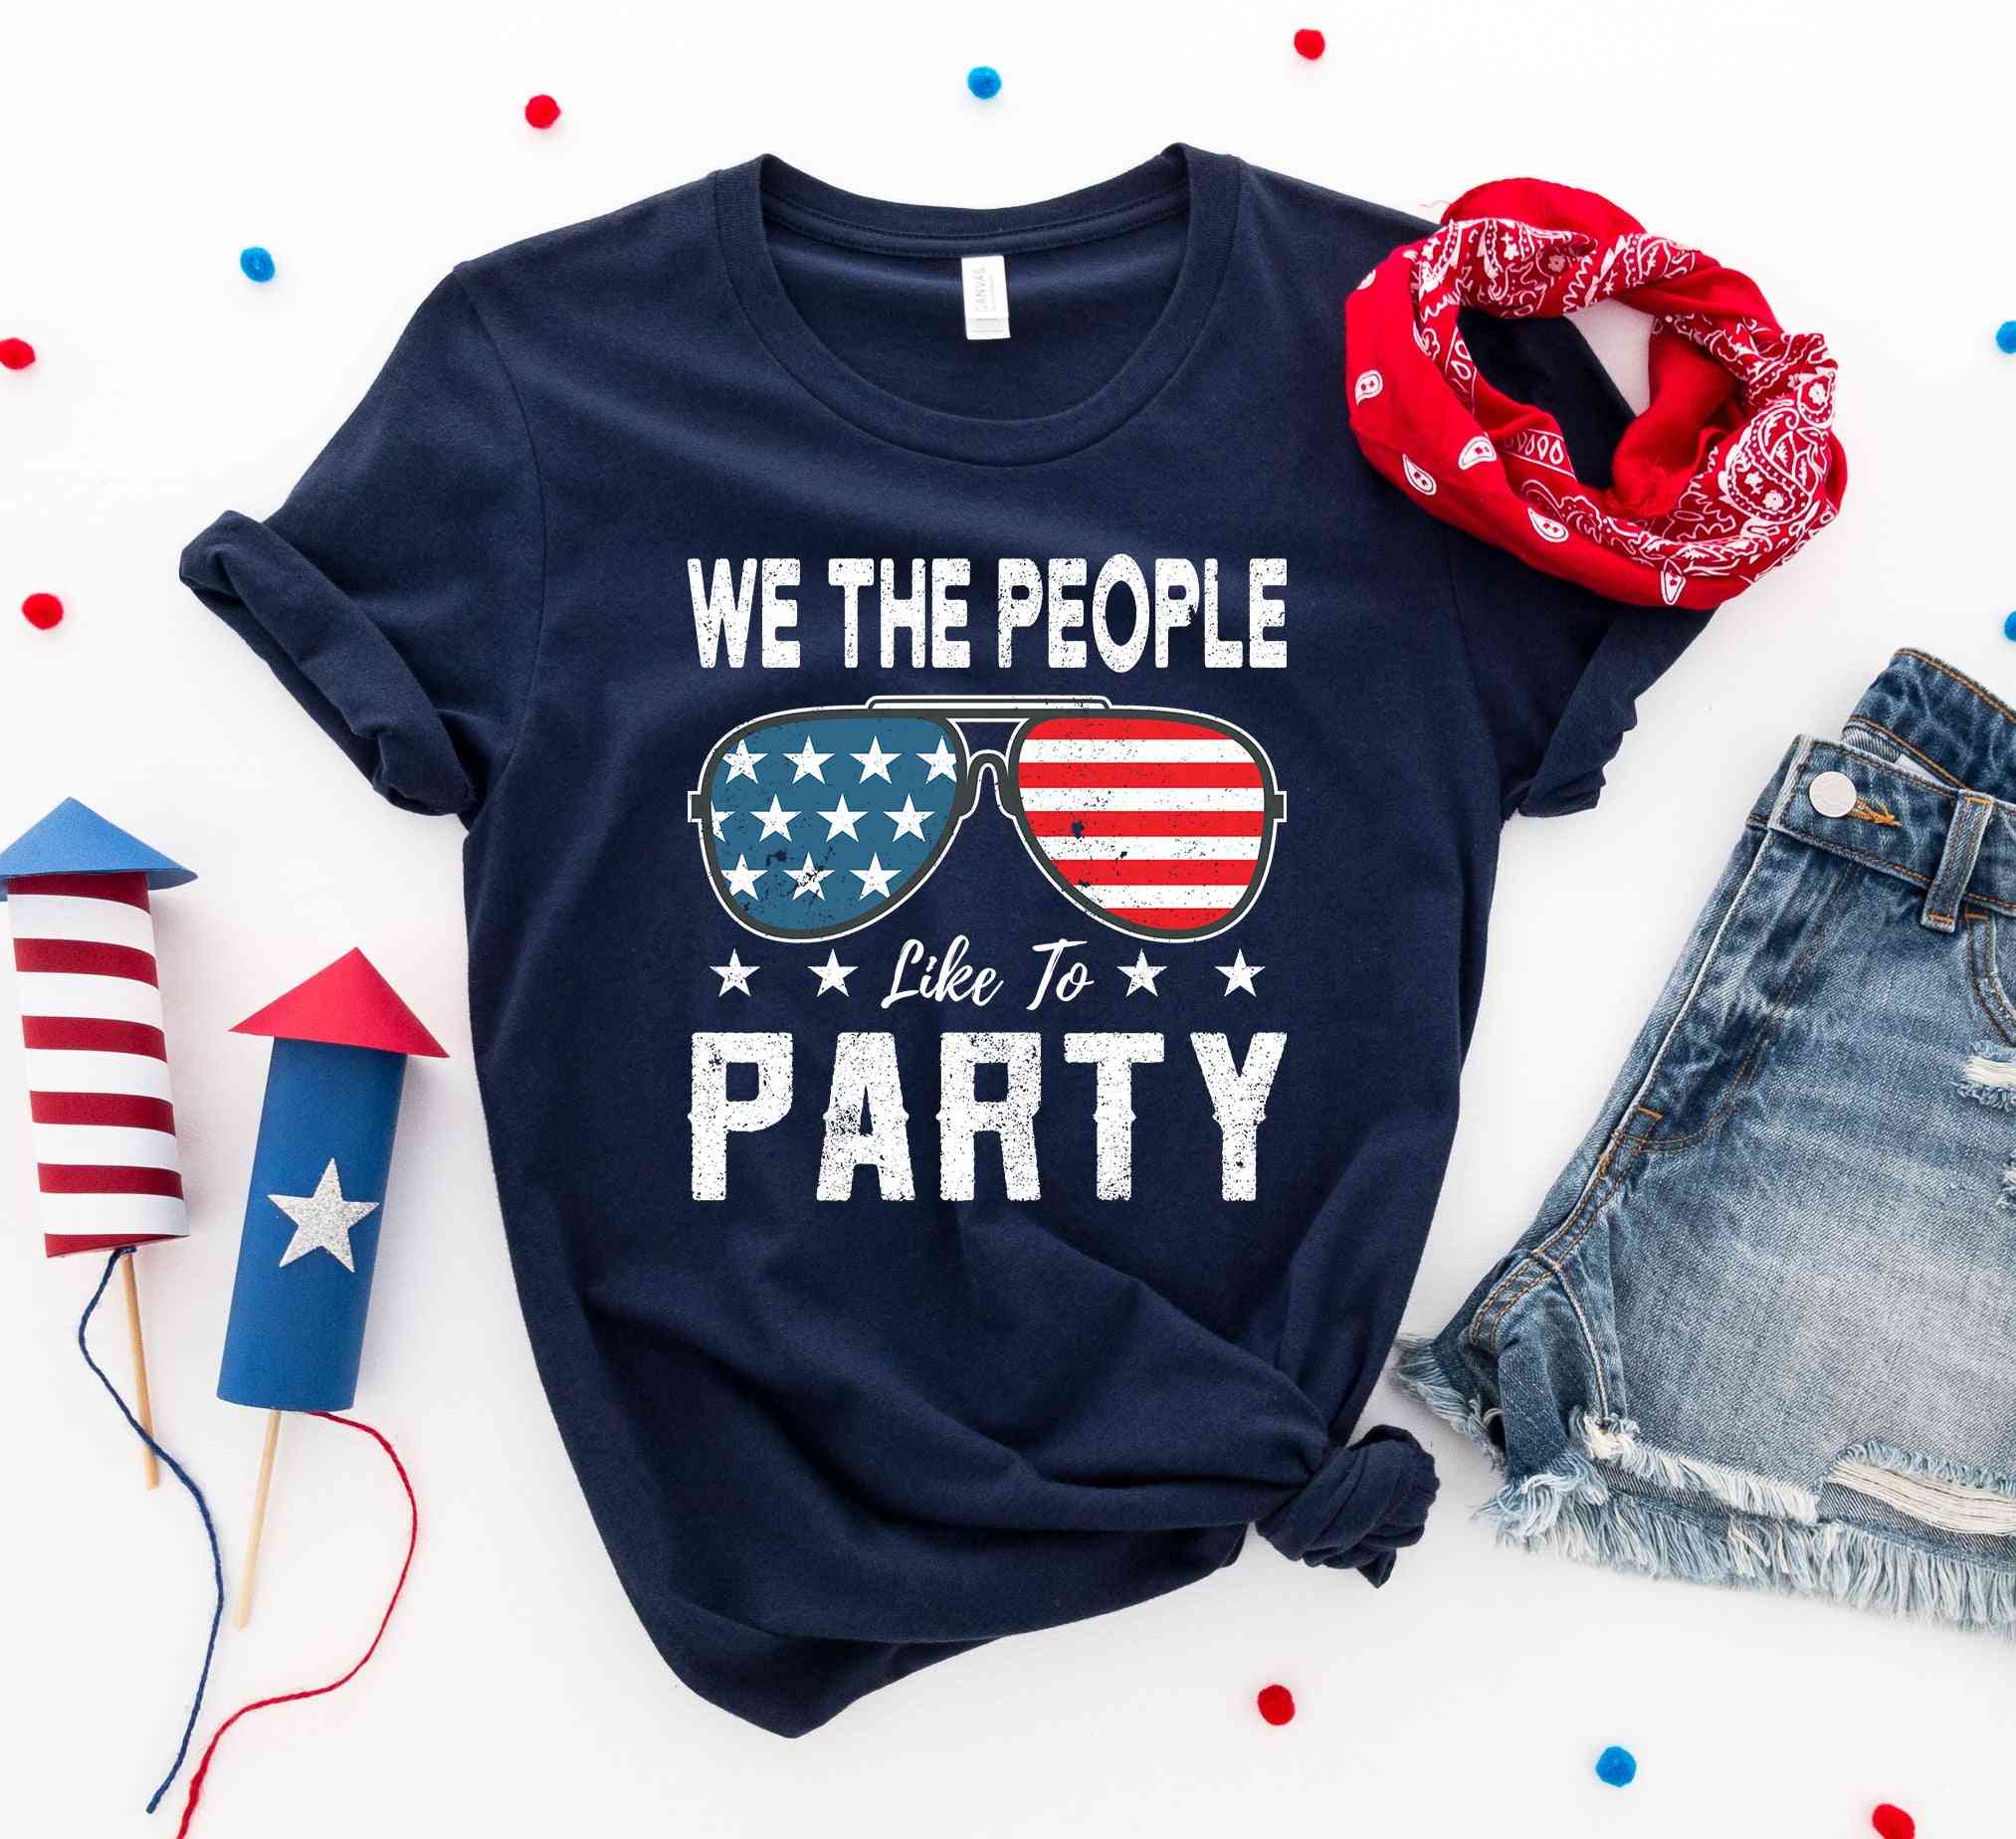 My lidé rádi párty tričko